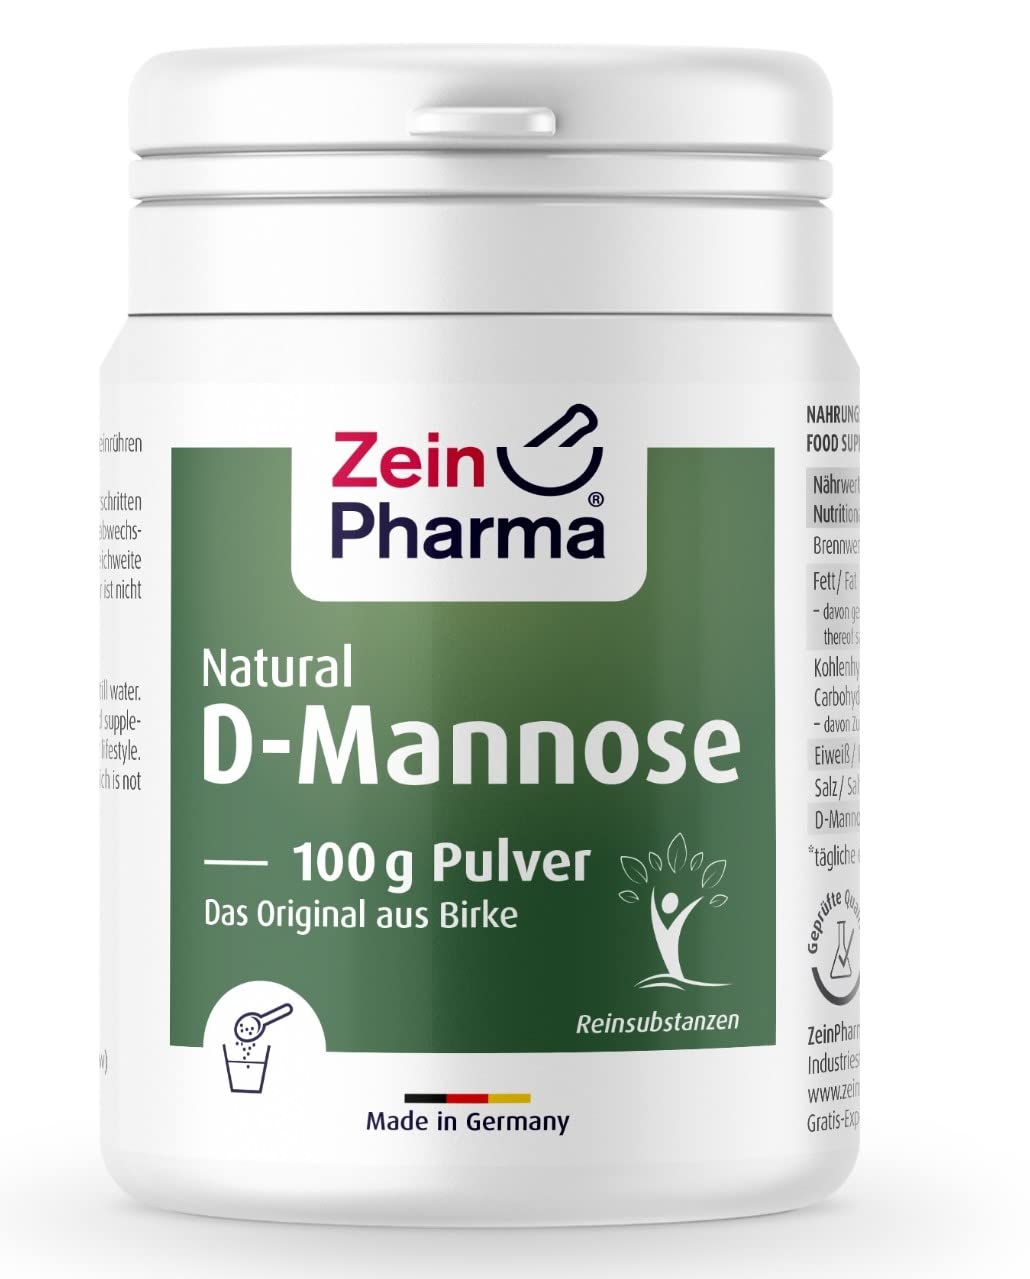 ZeinPharma D-Mannose Pulver 100g (Monatsvorrat) - dietätische Behandlung gegen Blasenentzündung